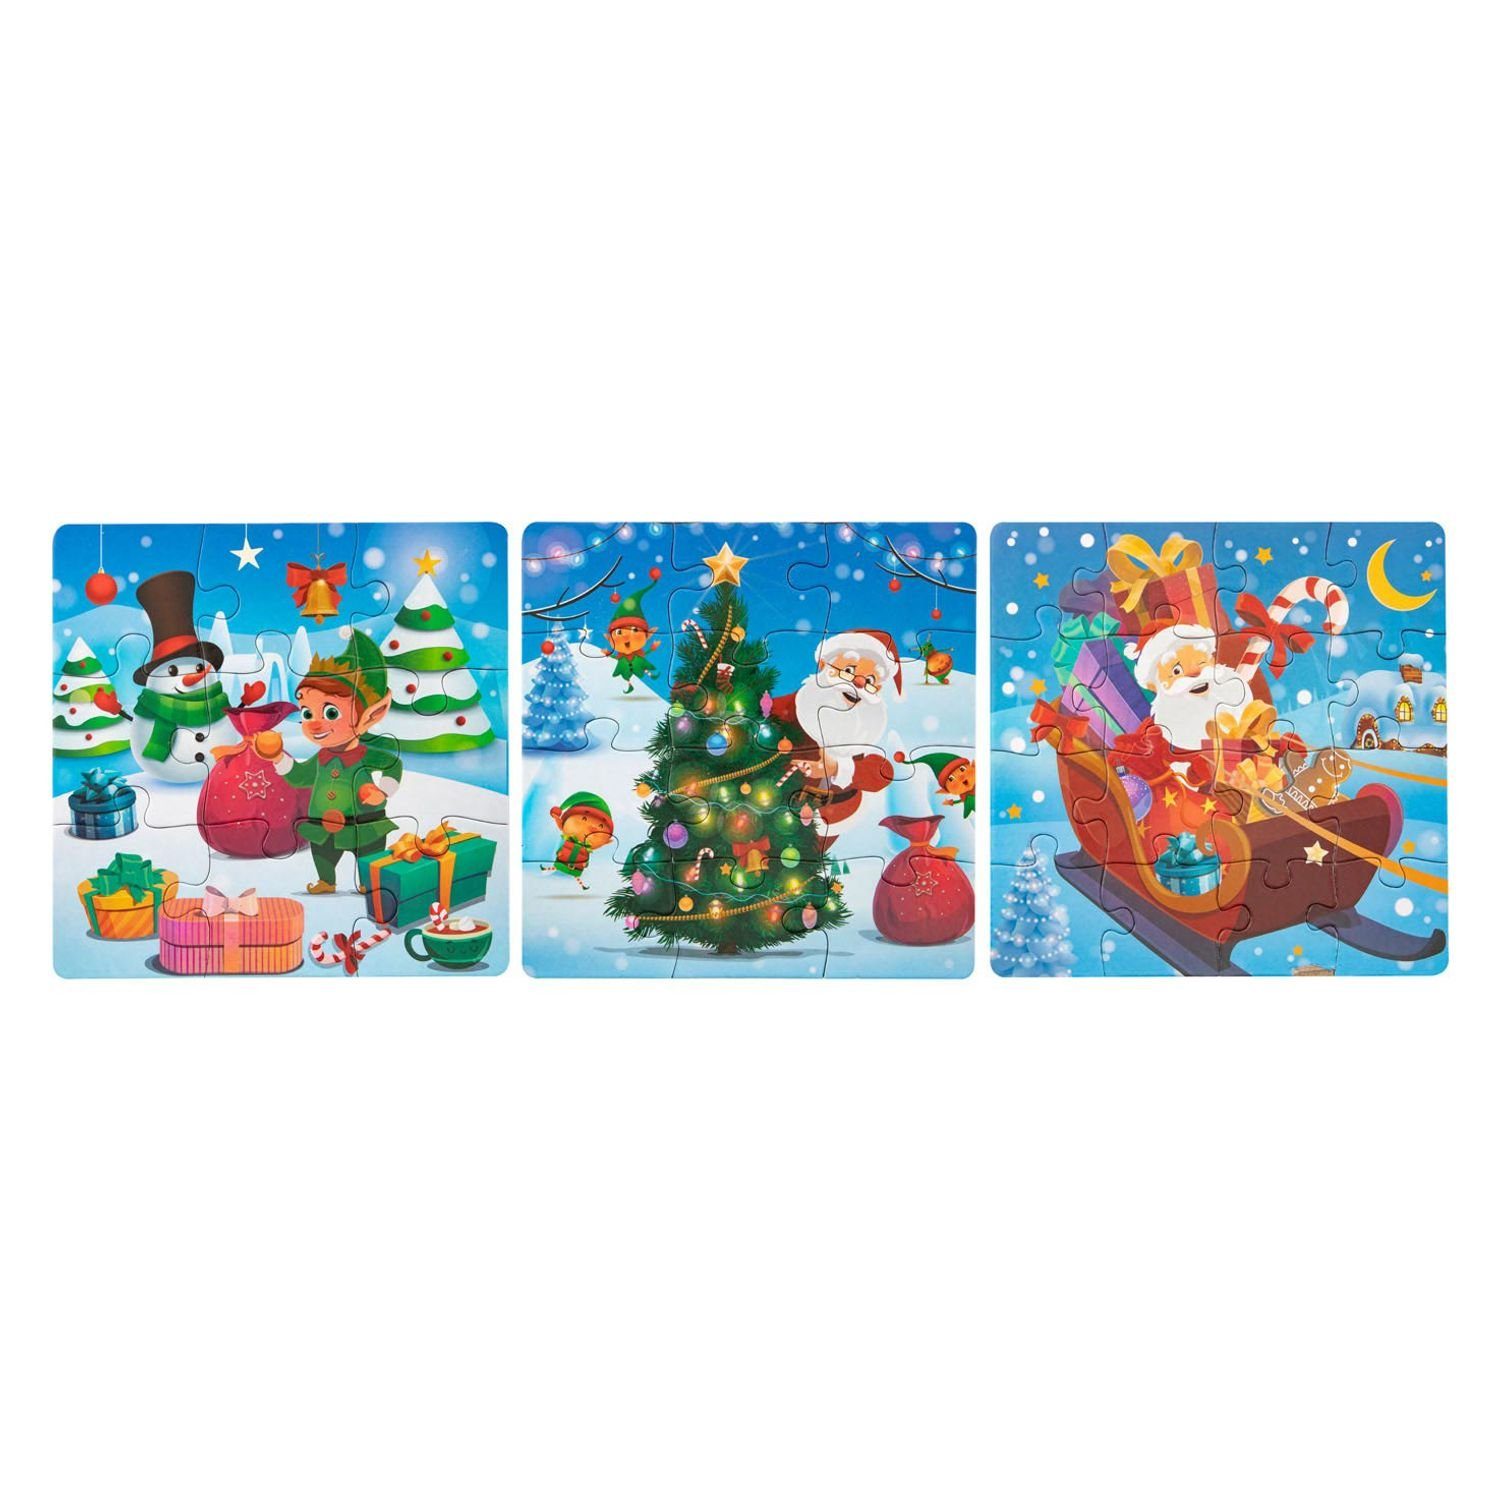 3in1 17x17cm, Weihnachtspuzzle BURI 3x Puzzleteile Kinderpuzzle Weihnachtsgeschenk Steckpuzzle